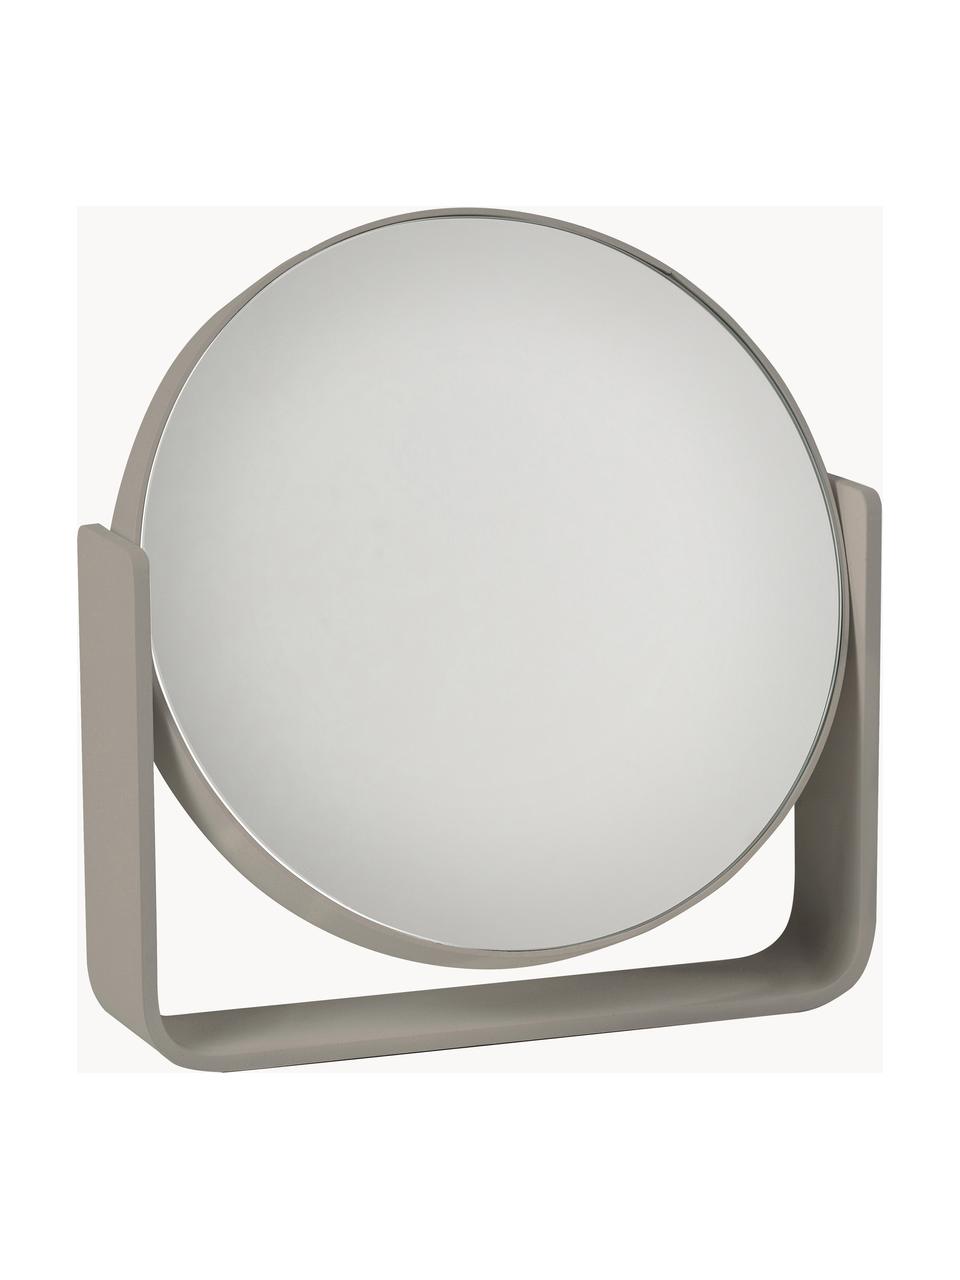 Runder Kosmetikspiegel Ume mit Vergrößerung, Taupe, B 19 x H 20 cm